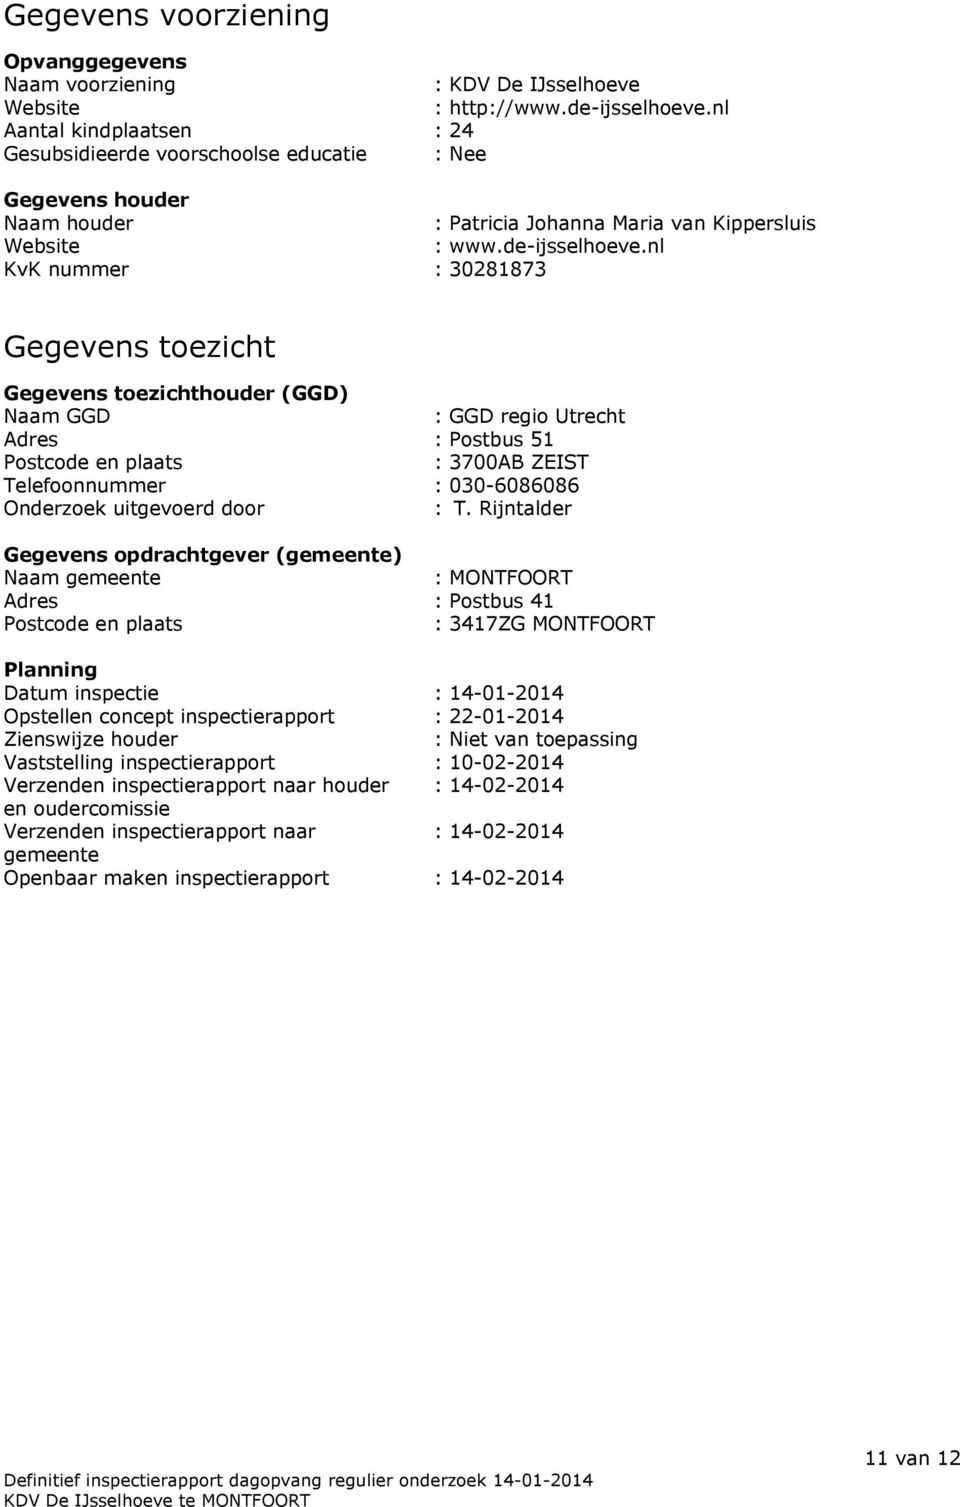 nl KvK nummer : 30281873 Gegevens toezicht Gegevens toezichthouder (GGD) Naam GGD : GGD regio Utrecht Adres : Postbus 51 Postcode en plaats : 3700AB ZEIST Telefoonnummer : 030-6086086 Onderzoek